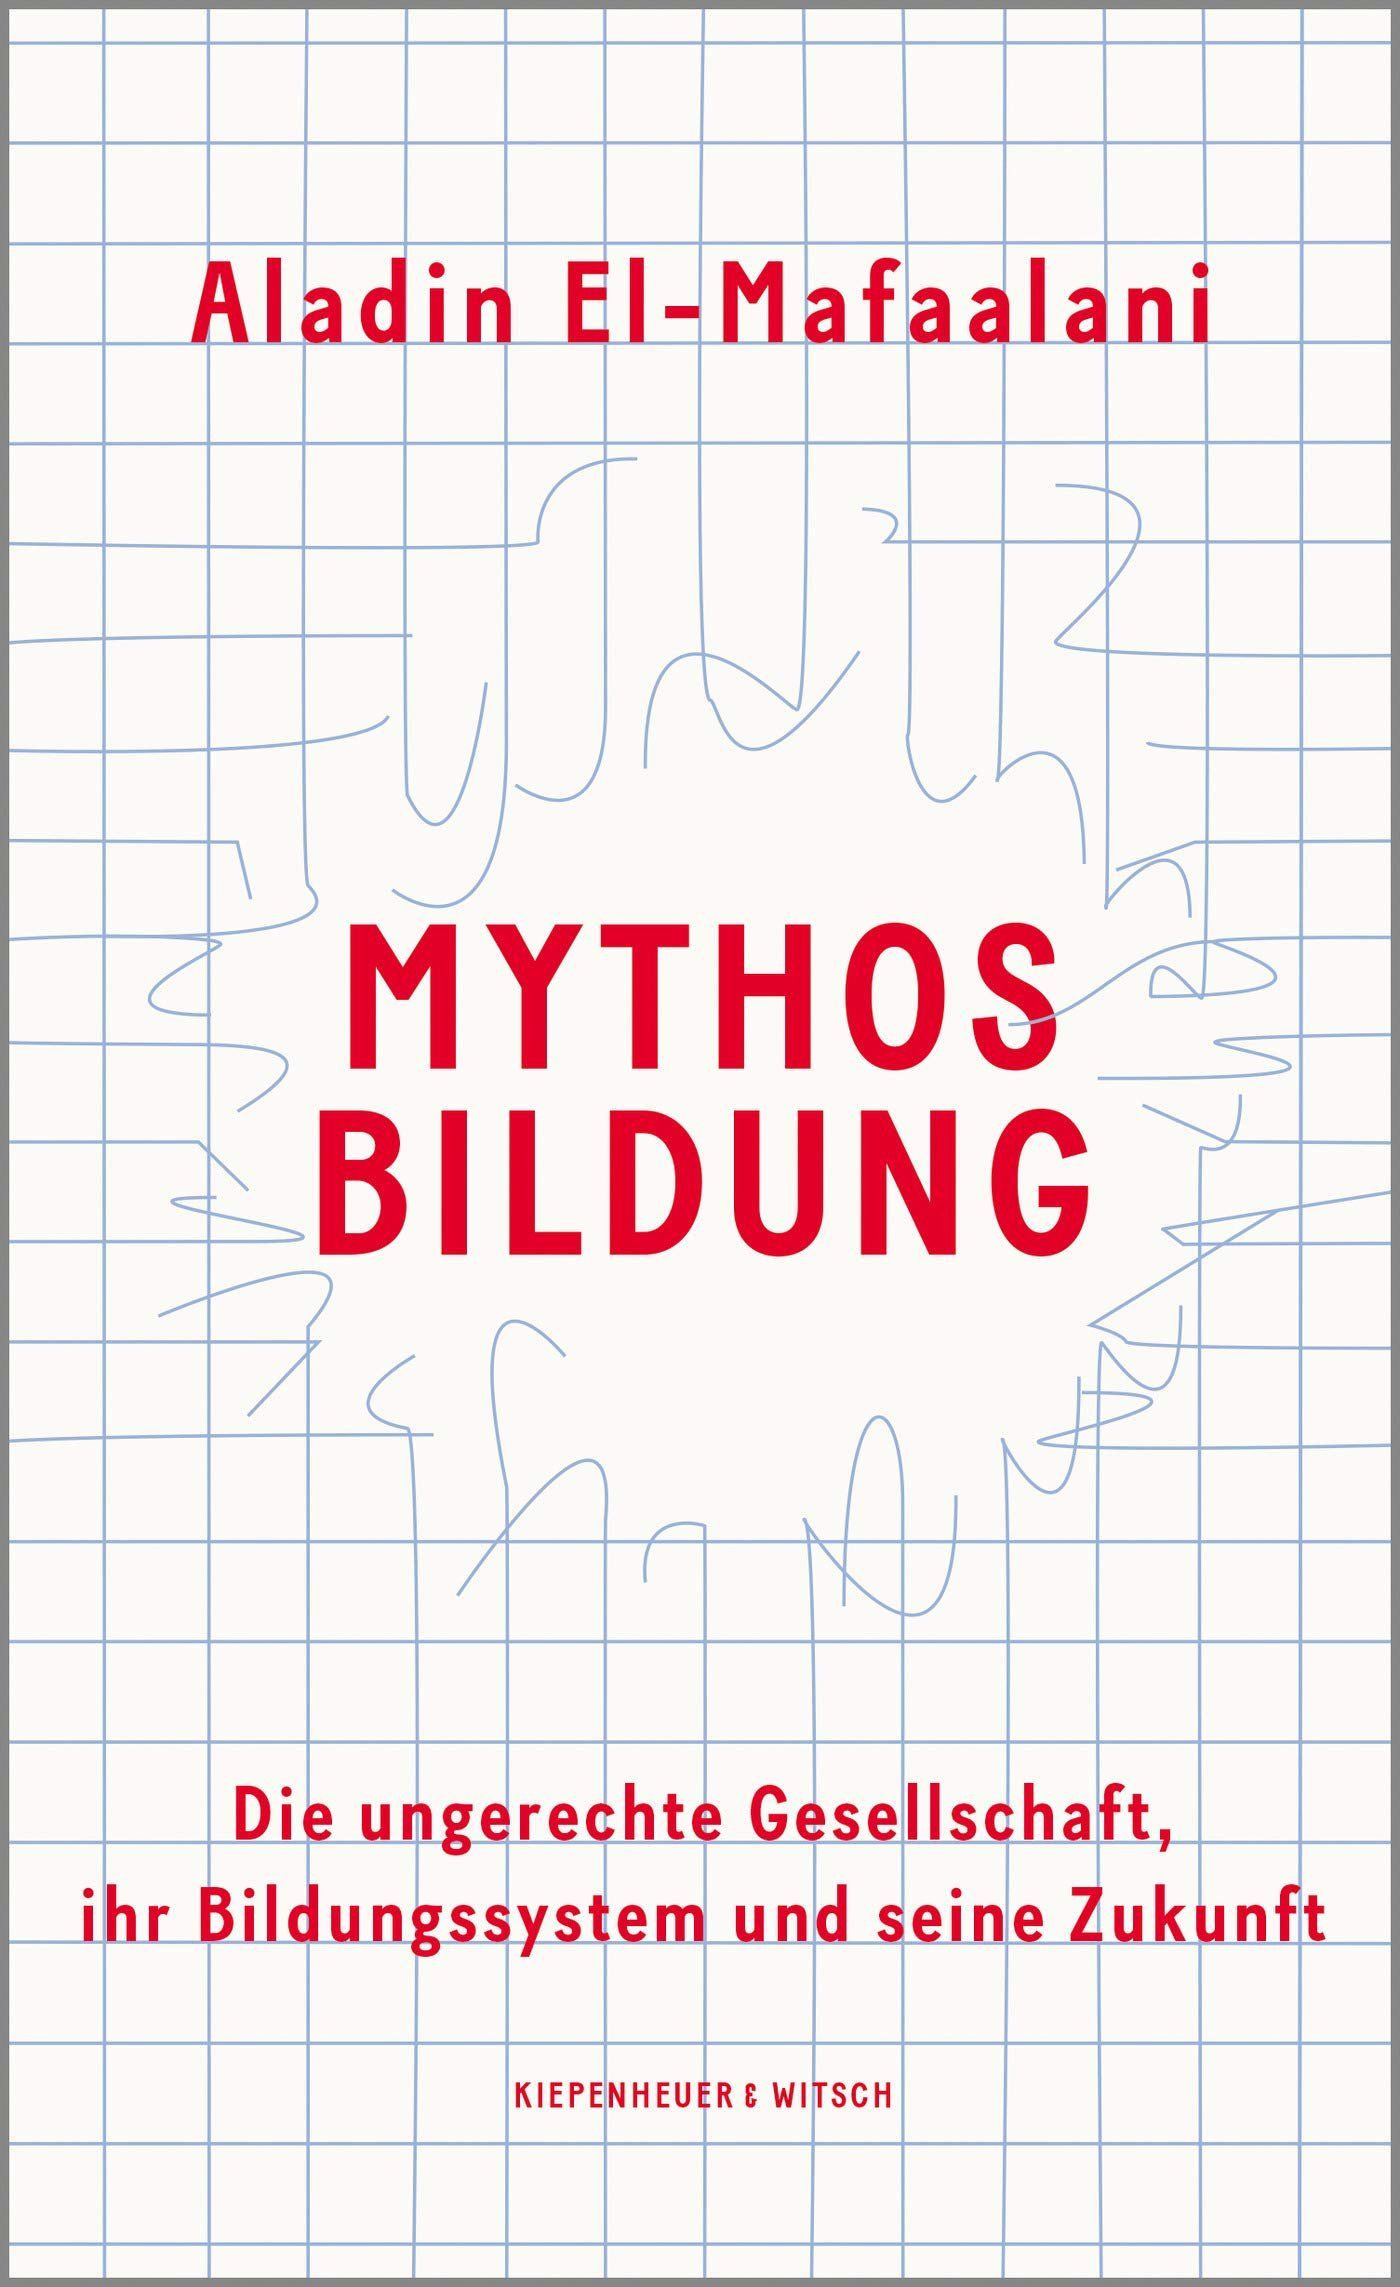 Aladin El-Mafaalani (2020): Mythos Bildung. Die ungerechte Gesellschaft, ihr Bildungssystem und seine Zukunft. Köln.